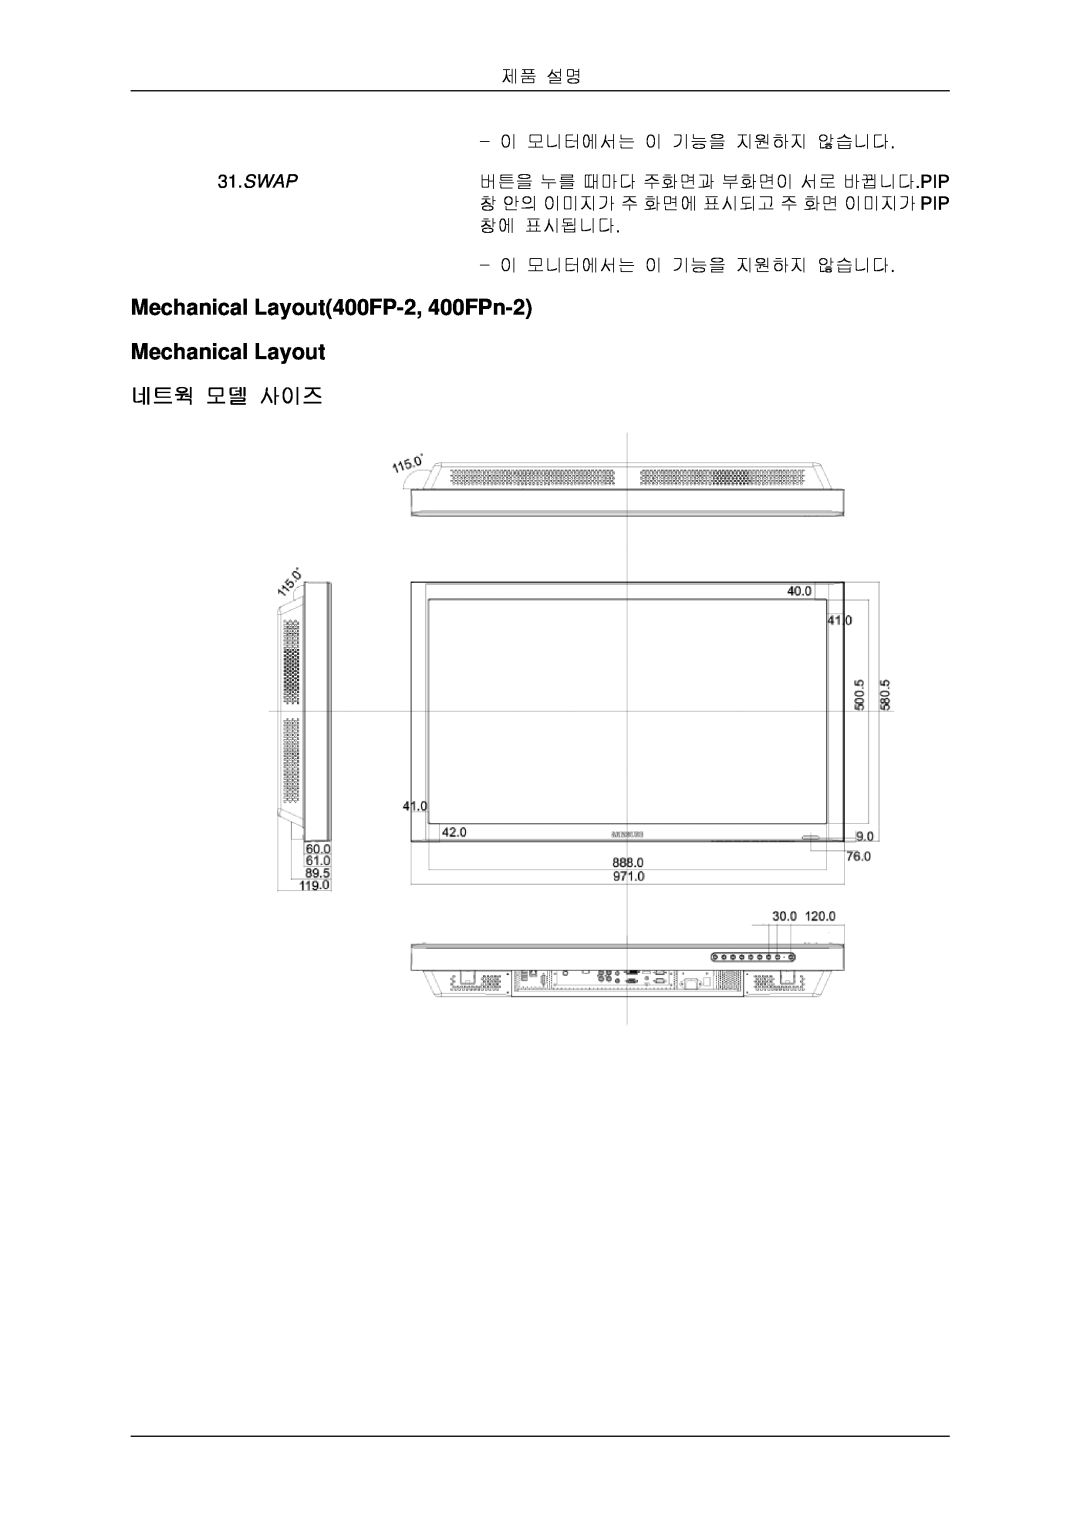 Samsung BN59-00806D-00 quick start Mechanical Layout400FP-2, 400FPn-2 Mechanical Layout 네트웍 모델 사이즈, Swap 